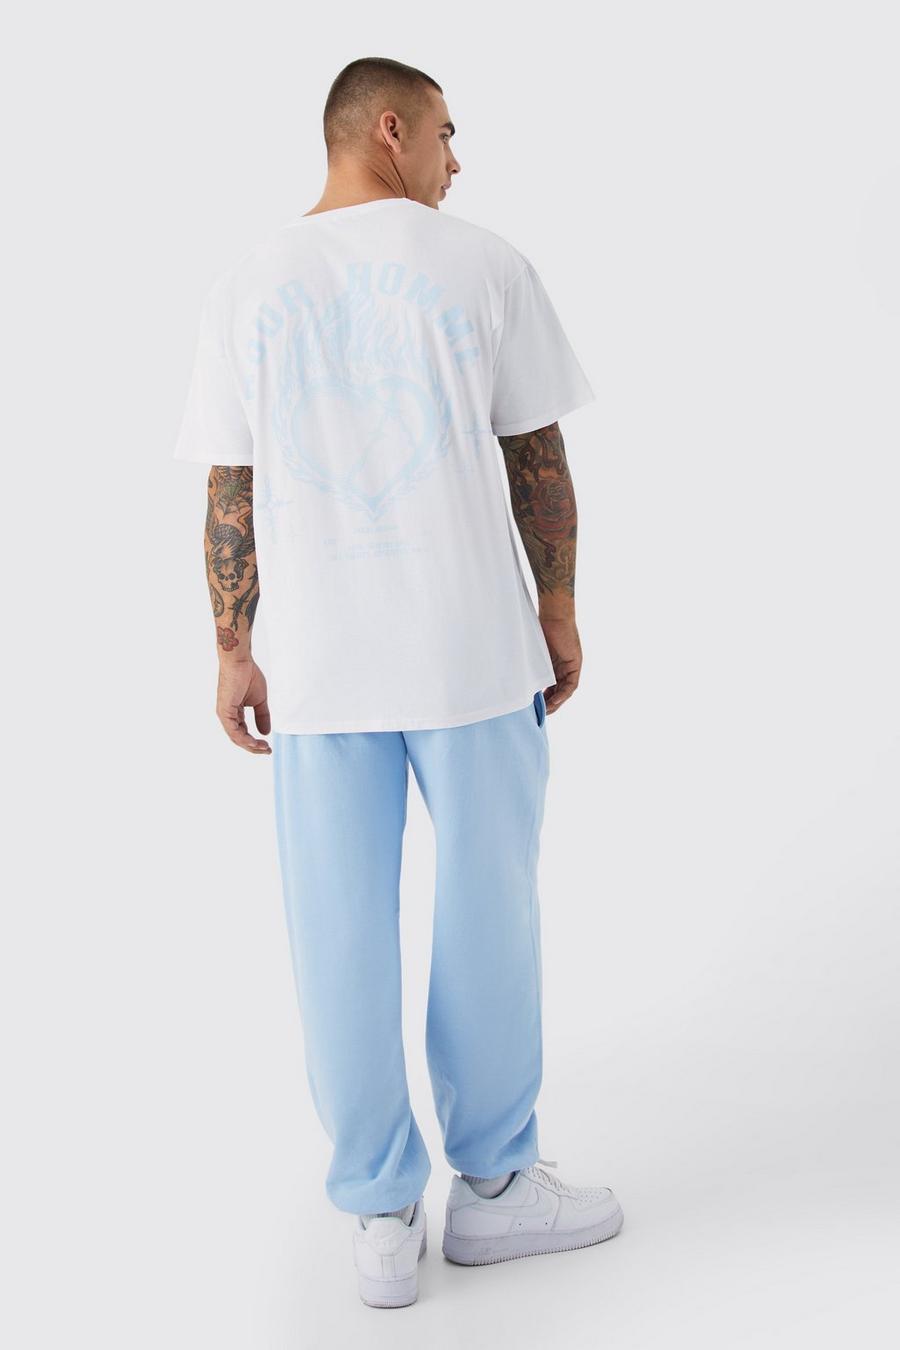 Ensemble avec t-shirt oversize à slogan Pour Homme et jogging, Light blue image number 1